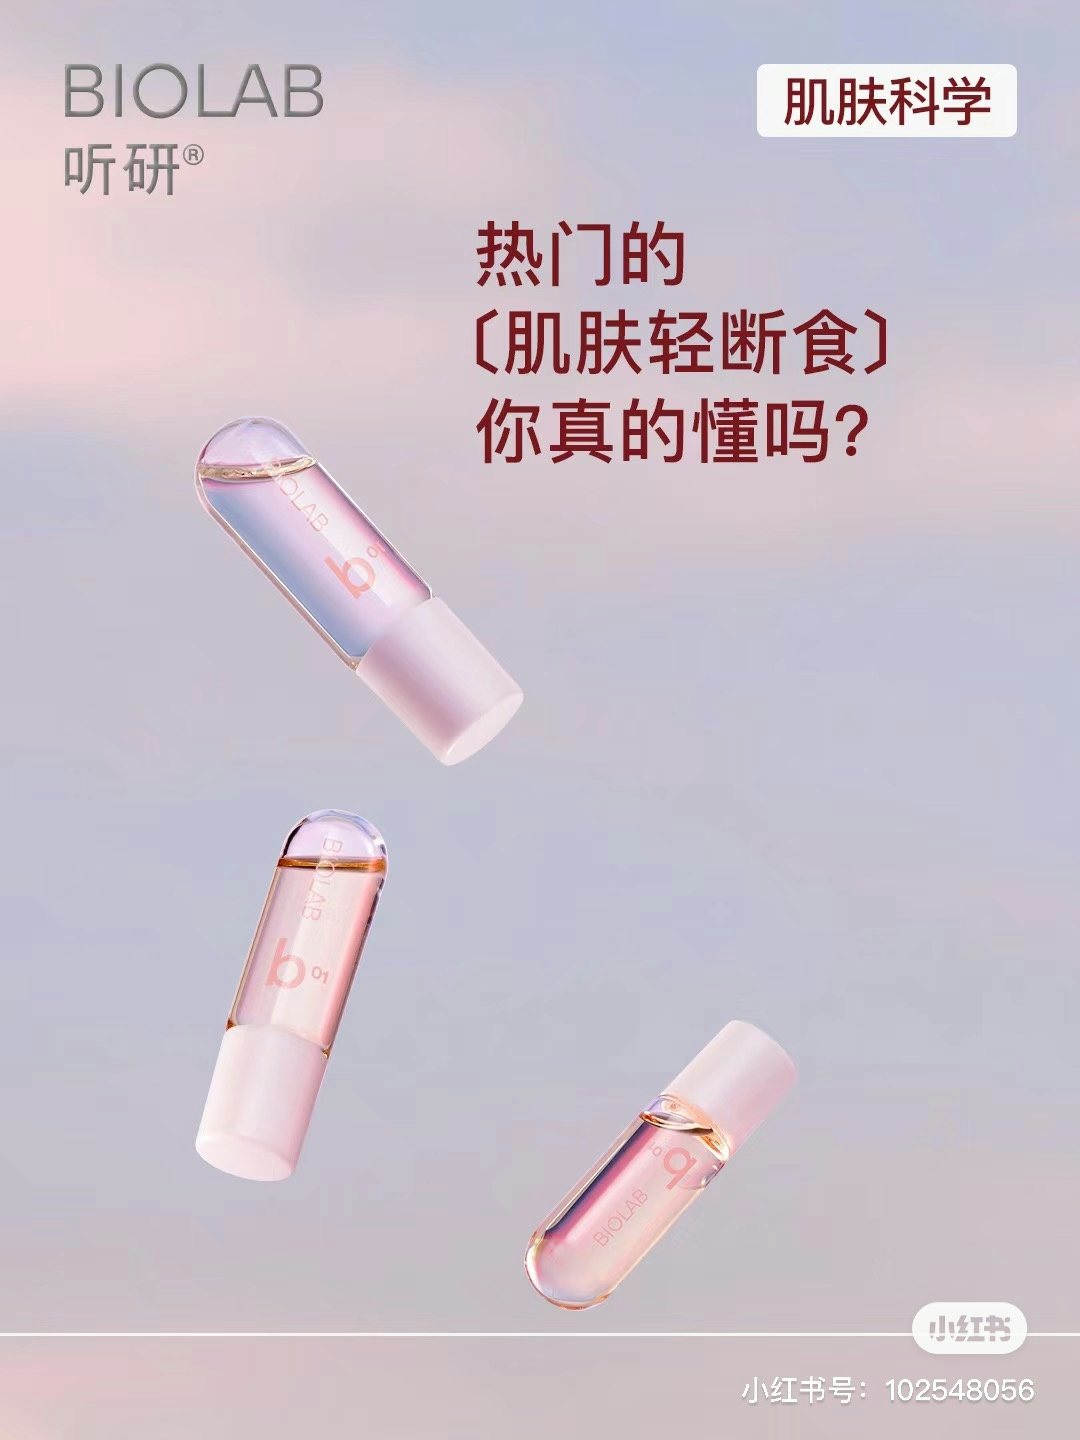 Beauty device label Biolab sharing its skin fasting tips to Xiaohongshu users. Image: Biolab Xiaohongshu